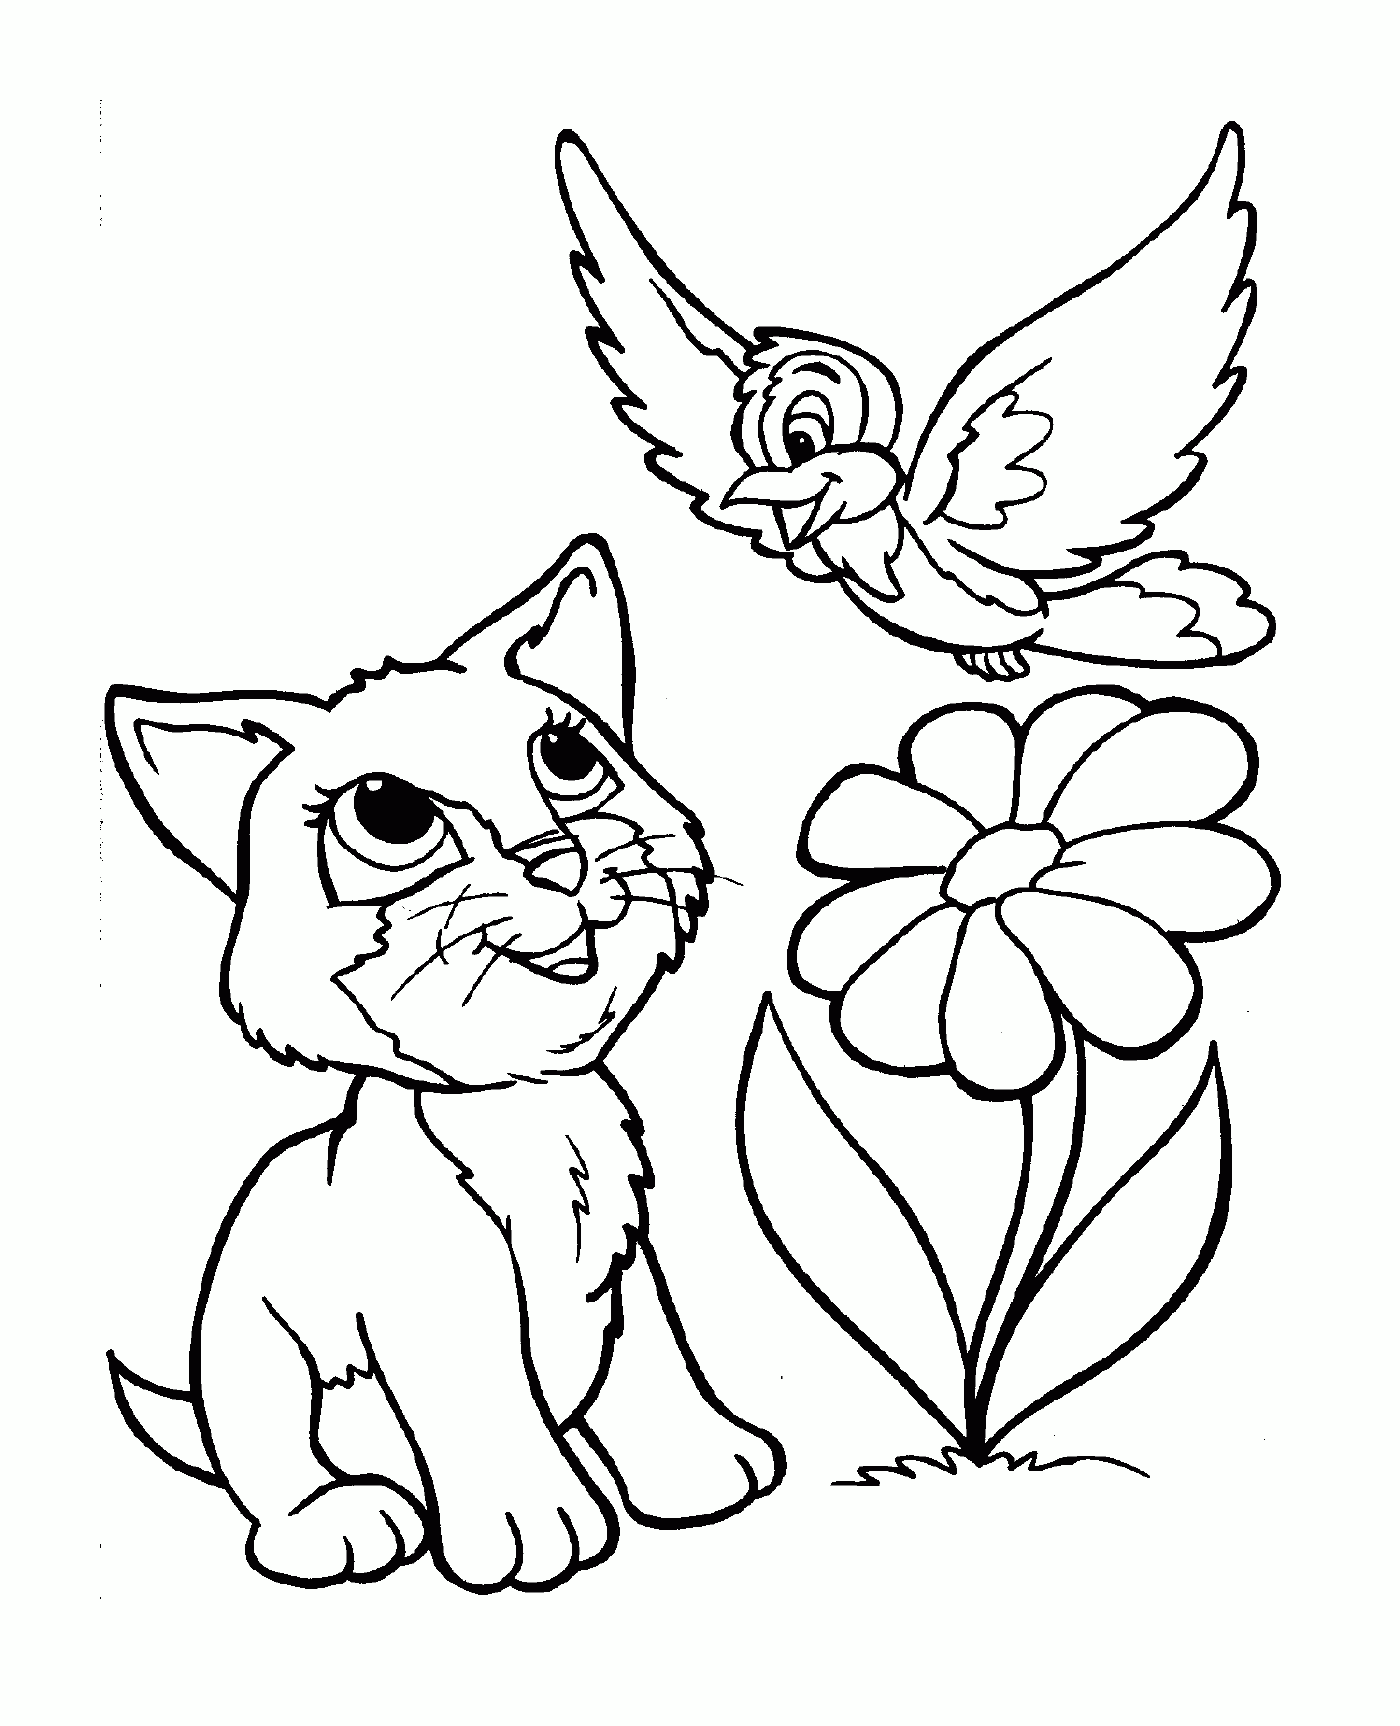  Un gato amistoso con un pájaro sentado junto a una flor 